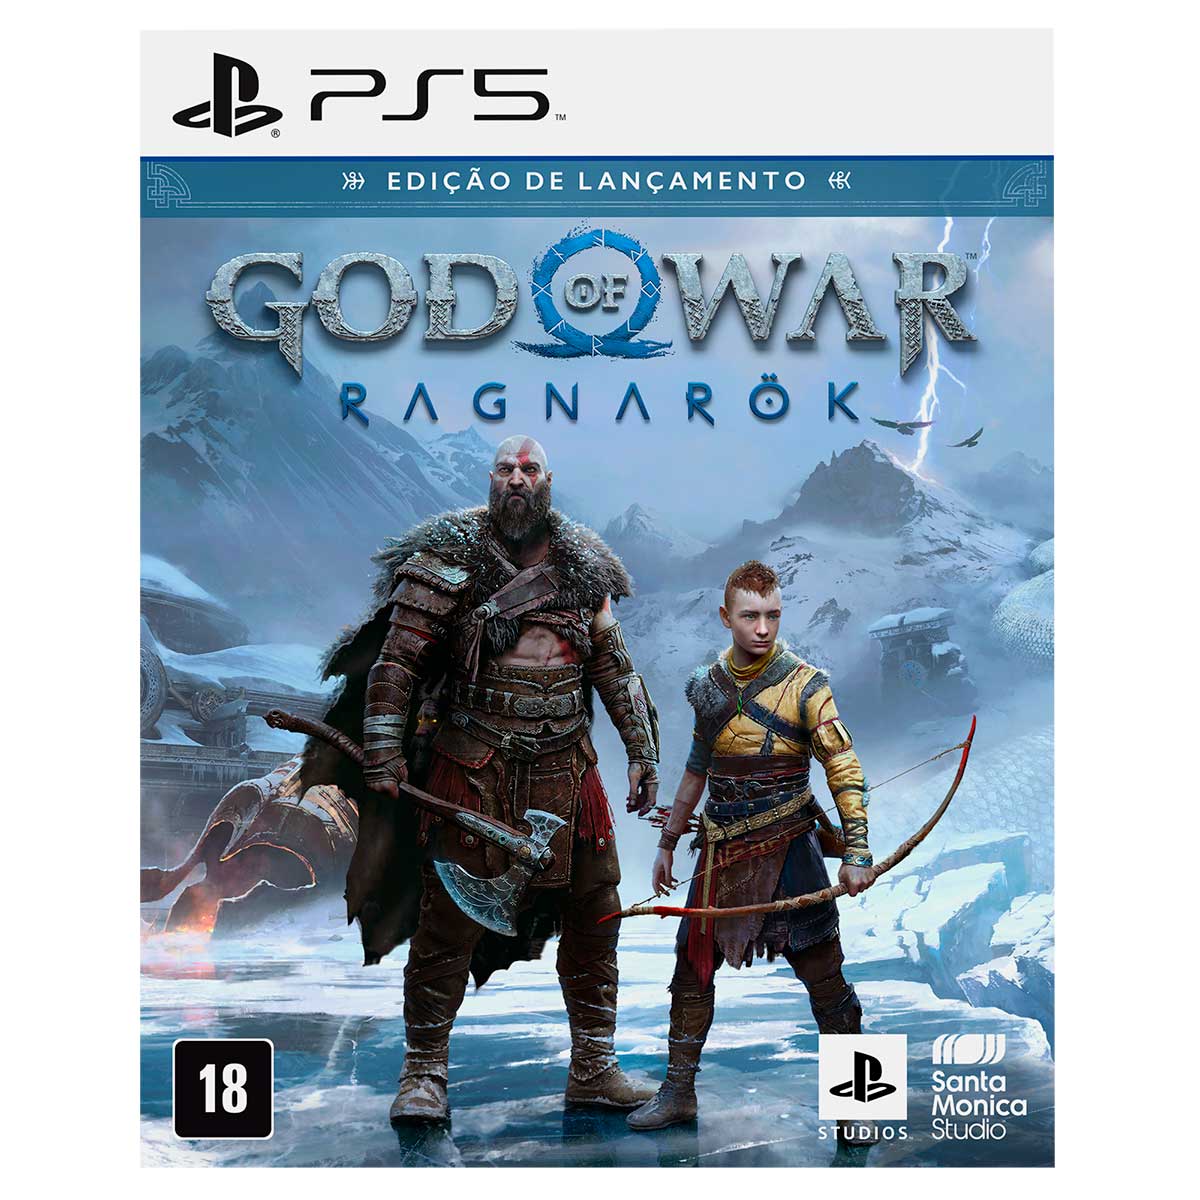 Jogo God of War Ragnarok Edição de Lançamento PS5 Santa Monica